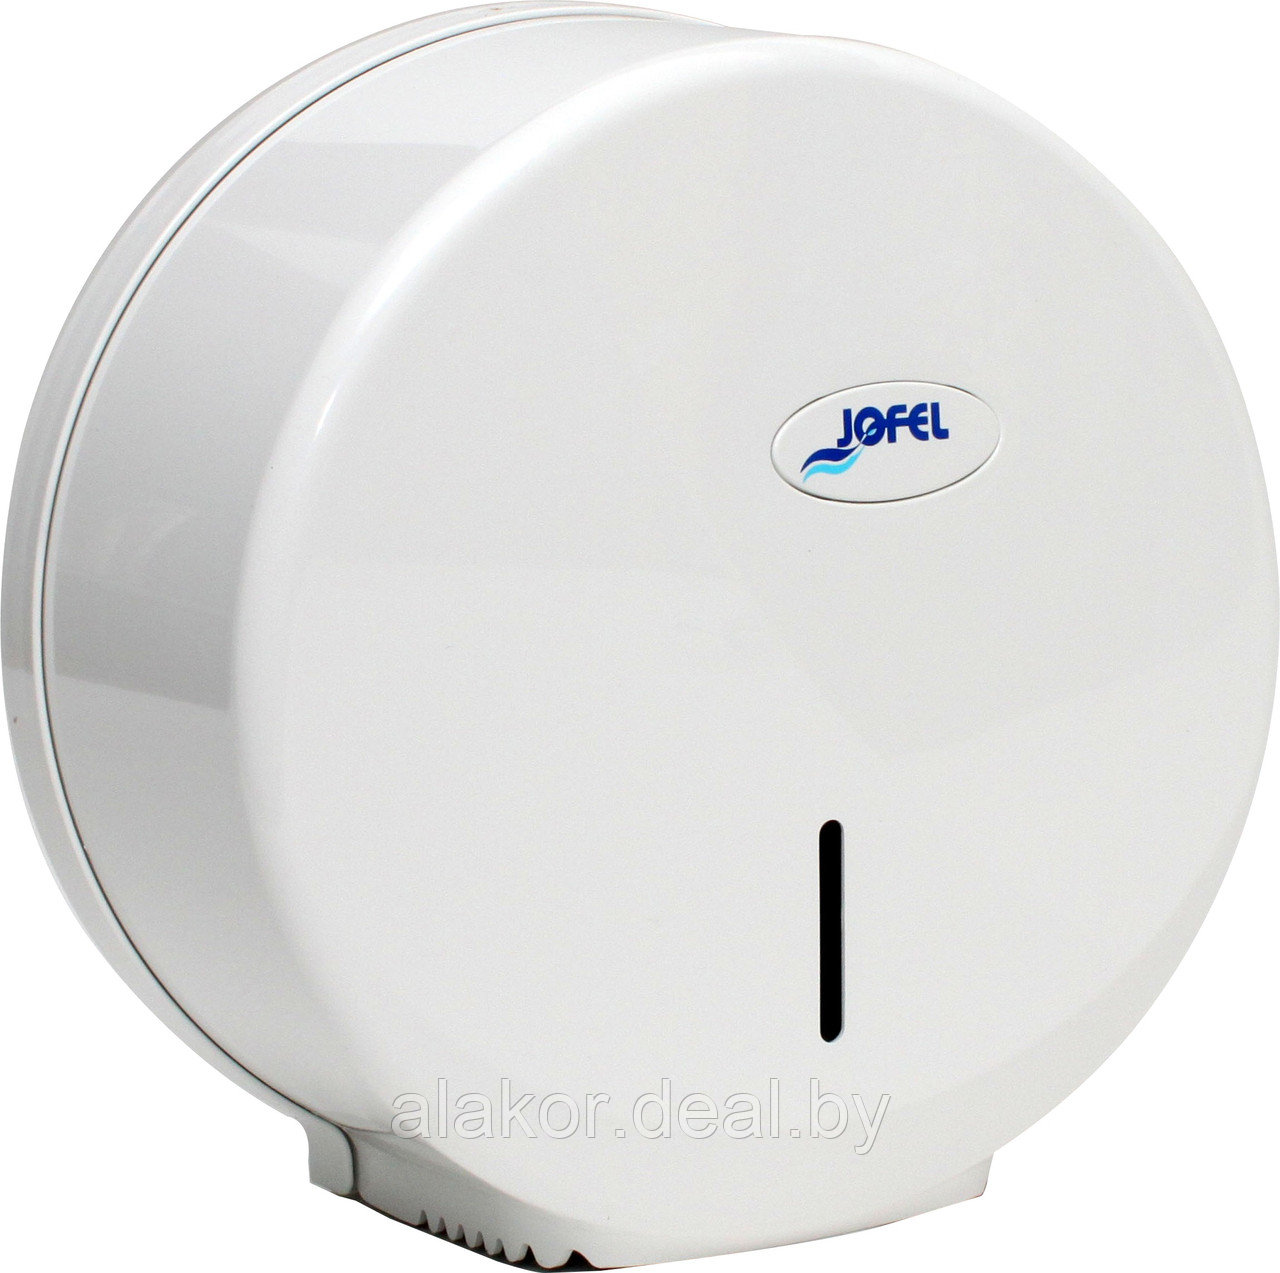 Диспенсер туалетной бумаги Jofel серии Azur-smart AE57001